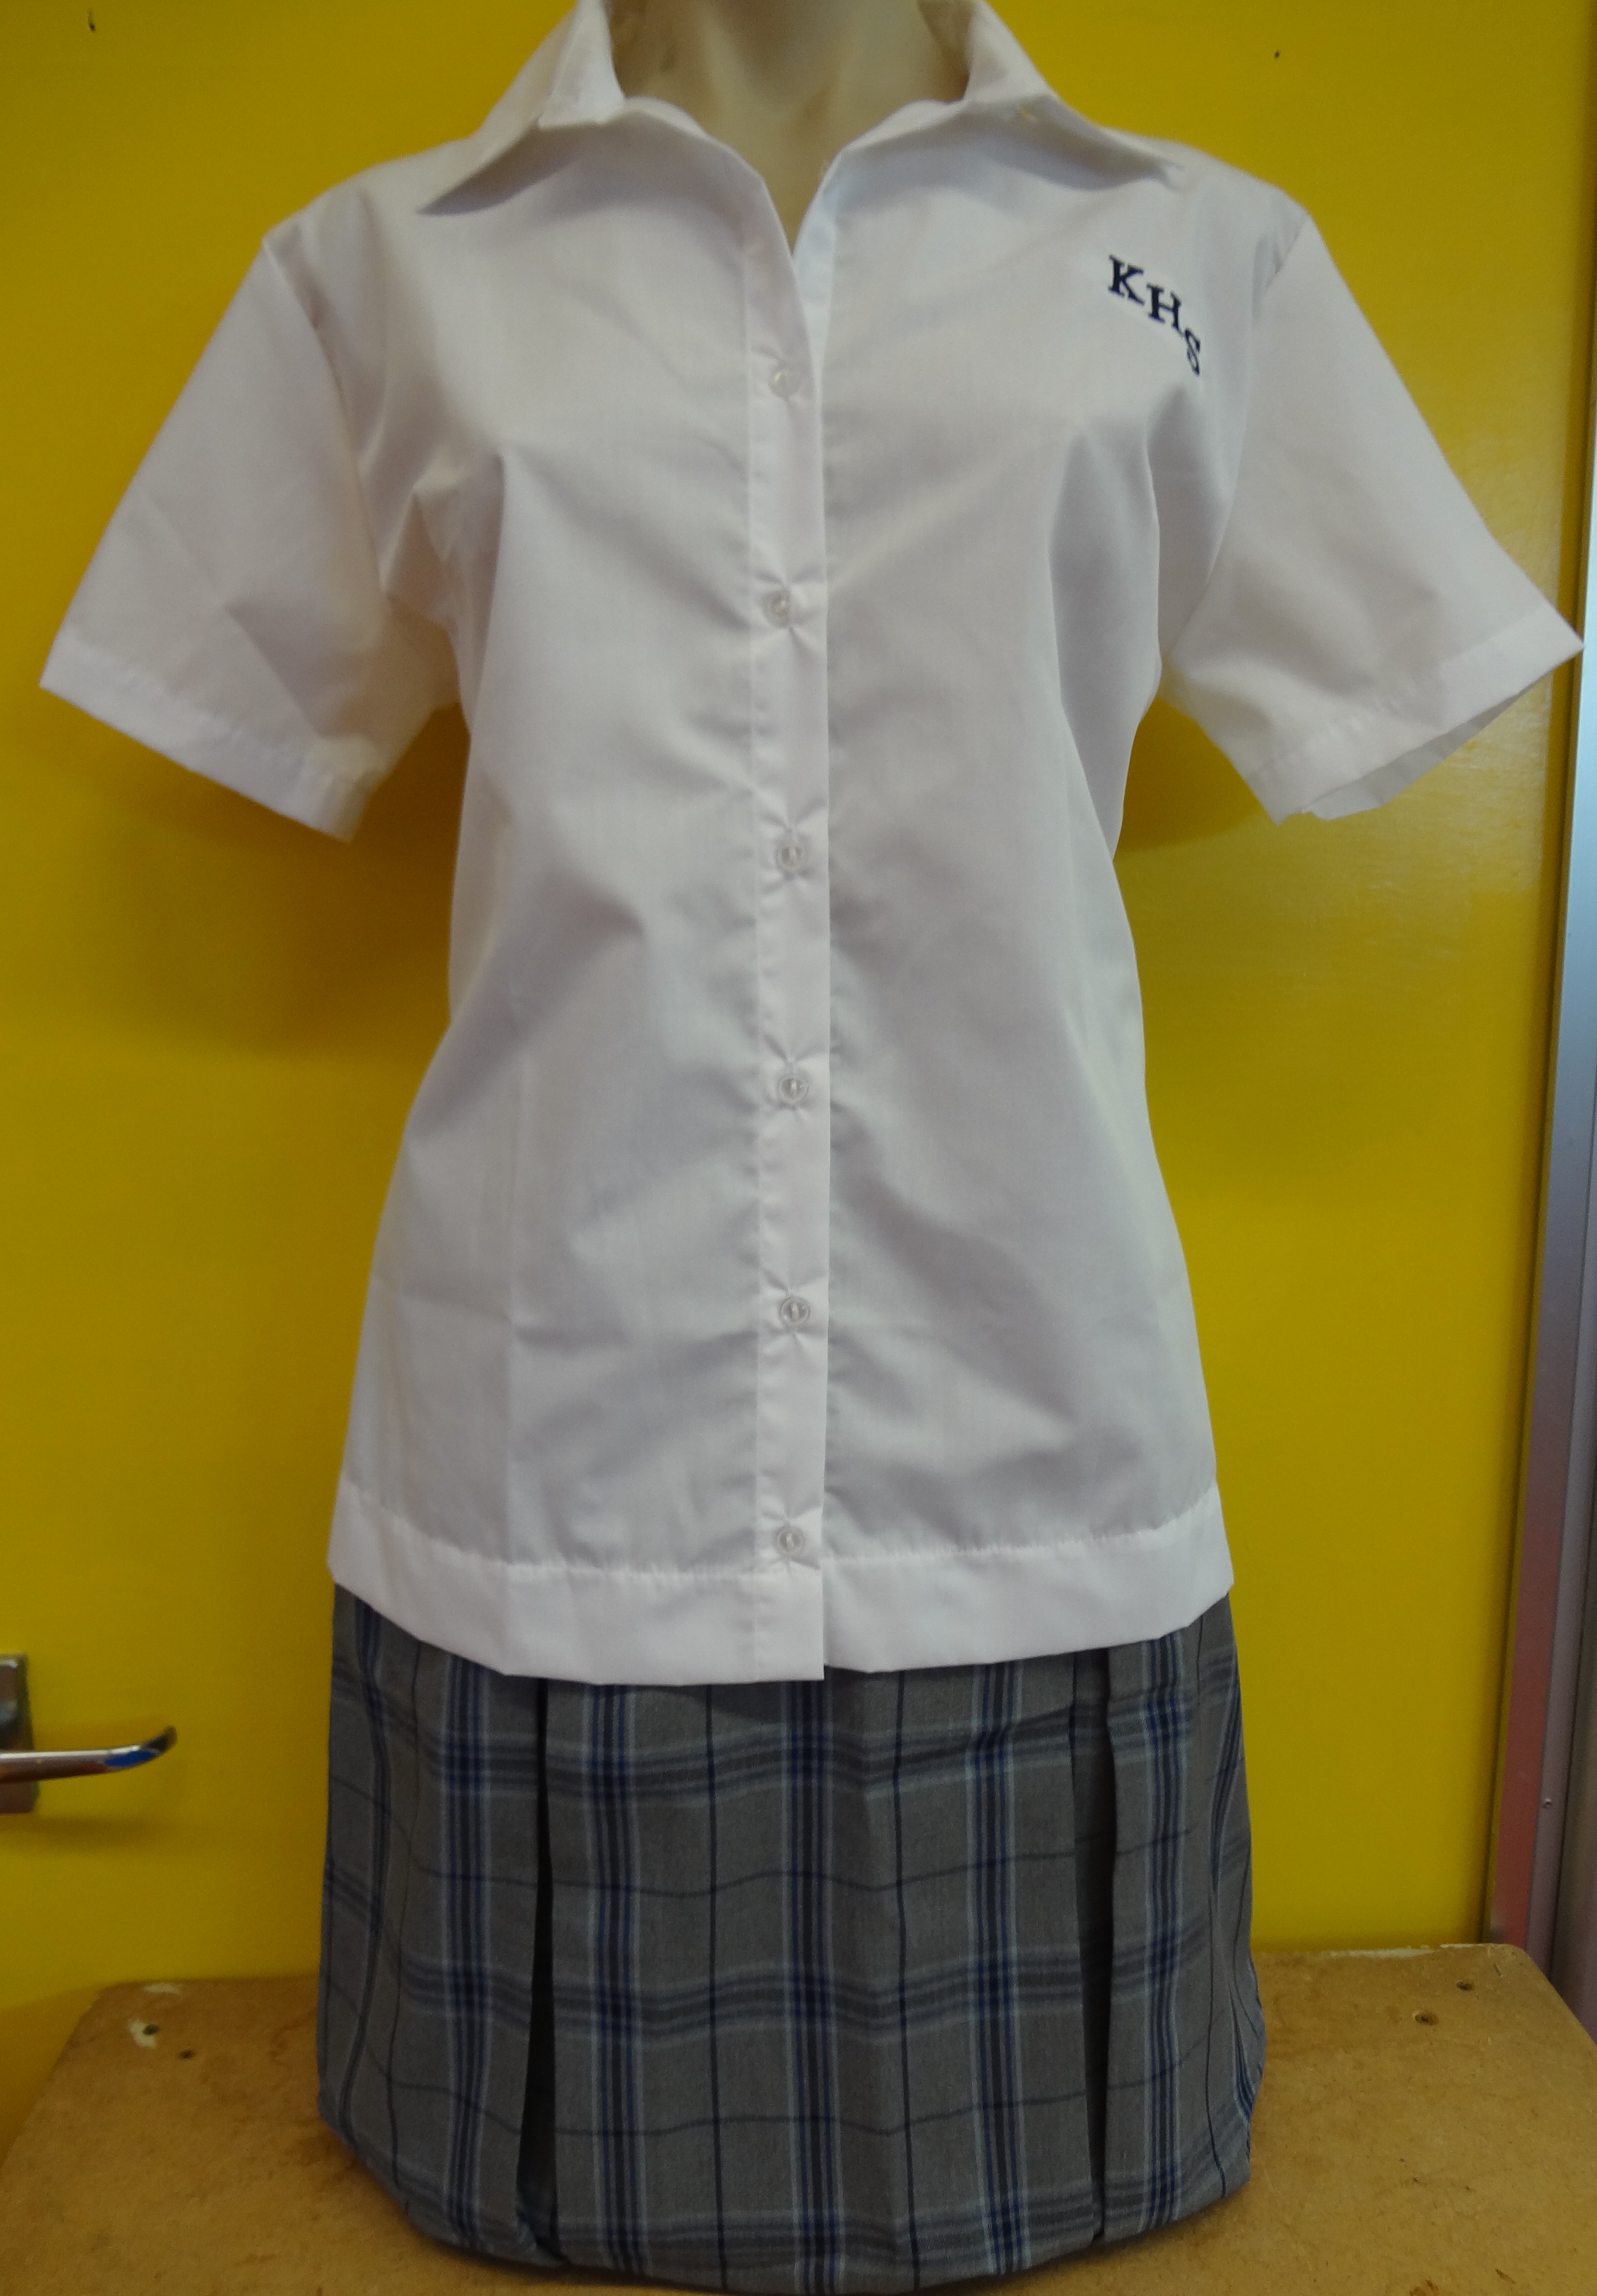 Senior skirt and blouse